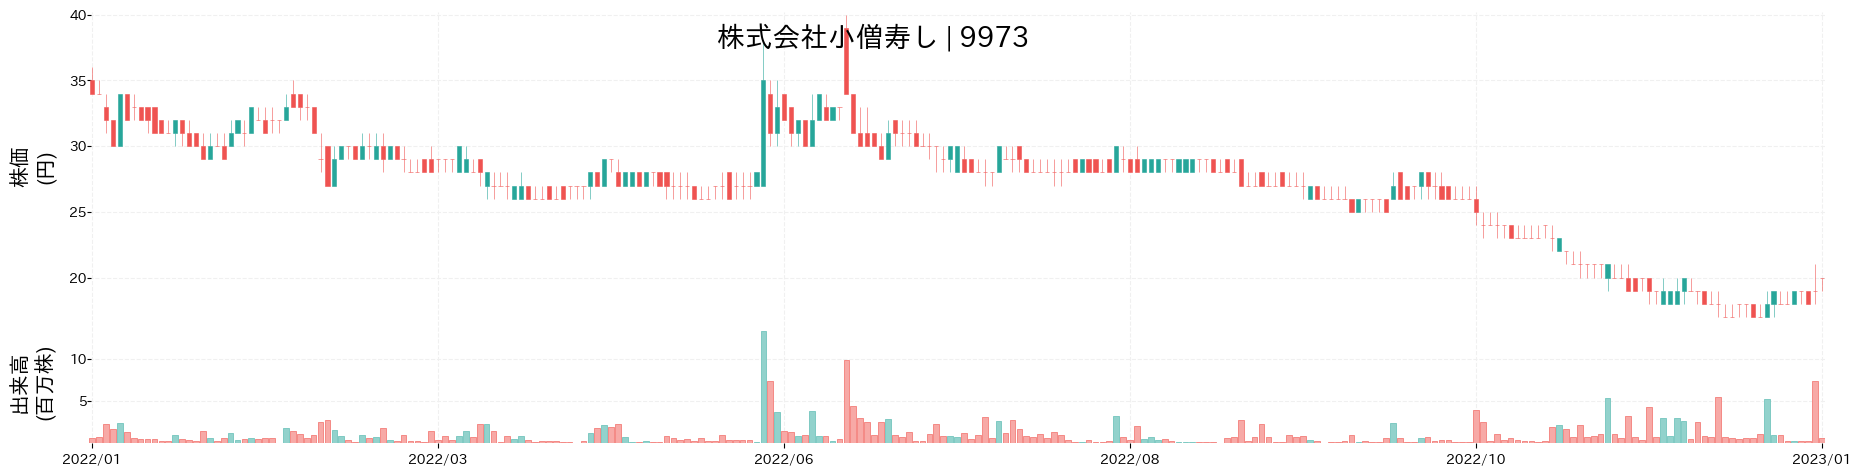 小僧寿しの株価推移(2022)